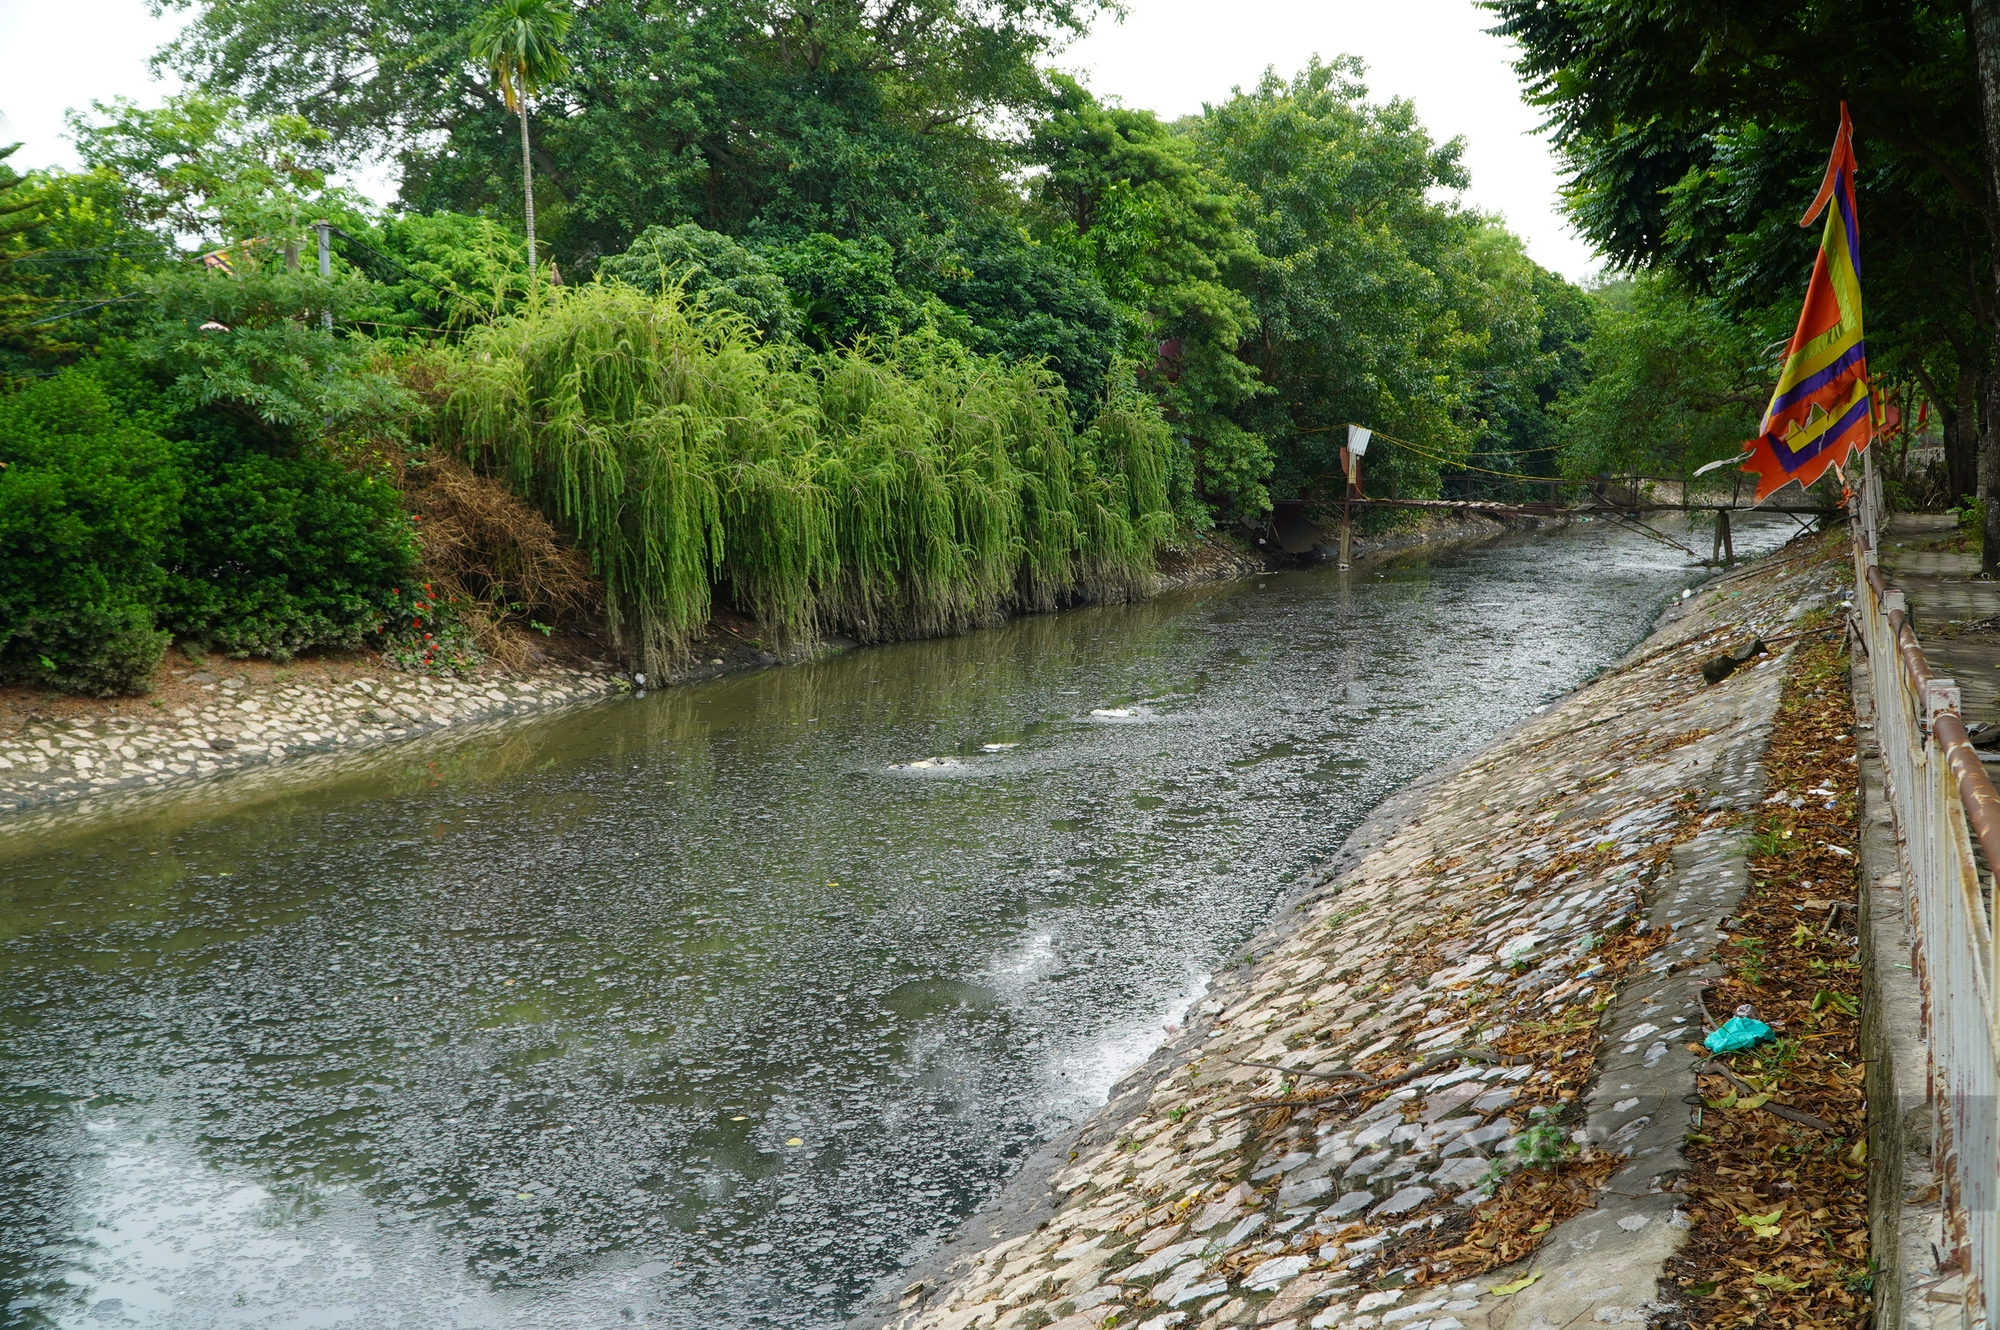  Dự án thu gom nước thải sinh hoạt trên sông Lừ vẫn ngổn ngang sau 3 năm khởi công - Ảnh 8.